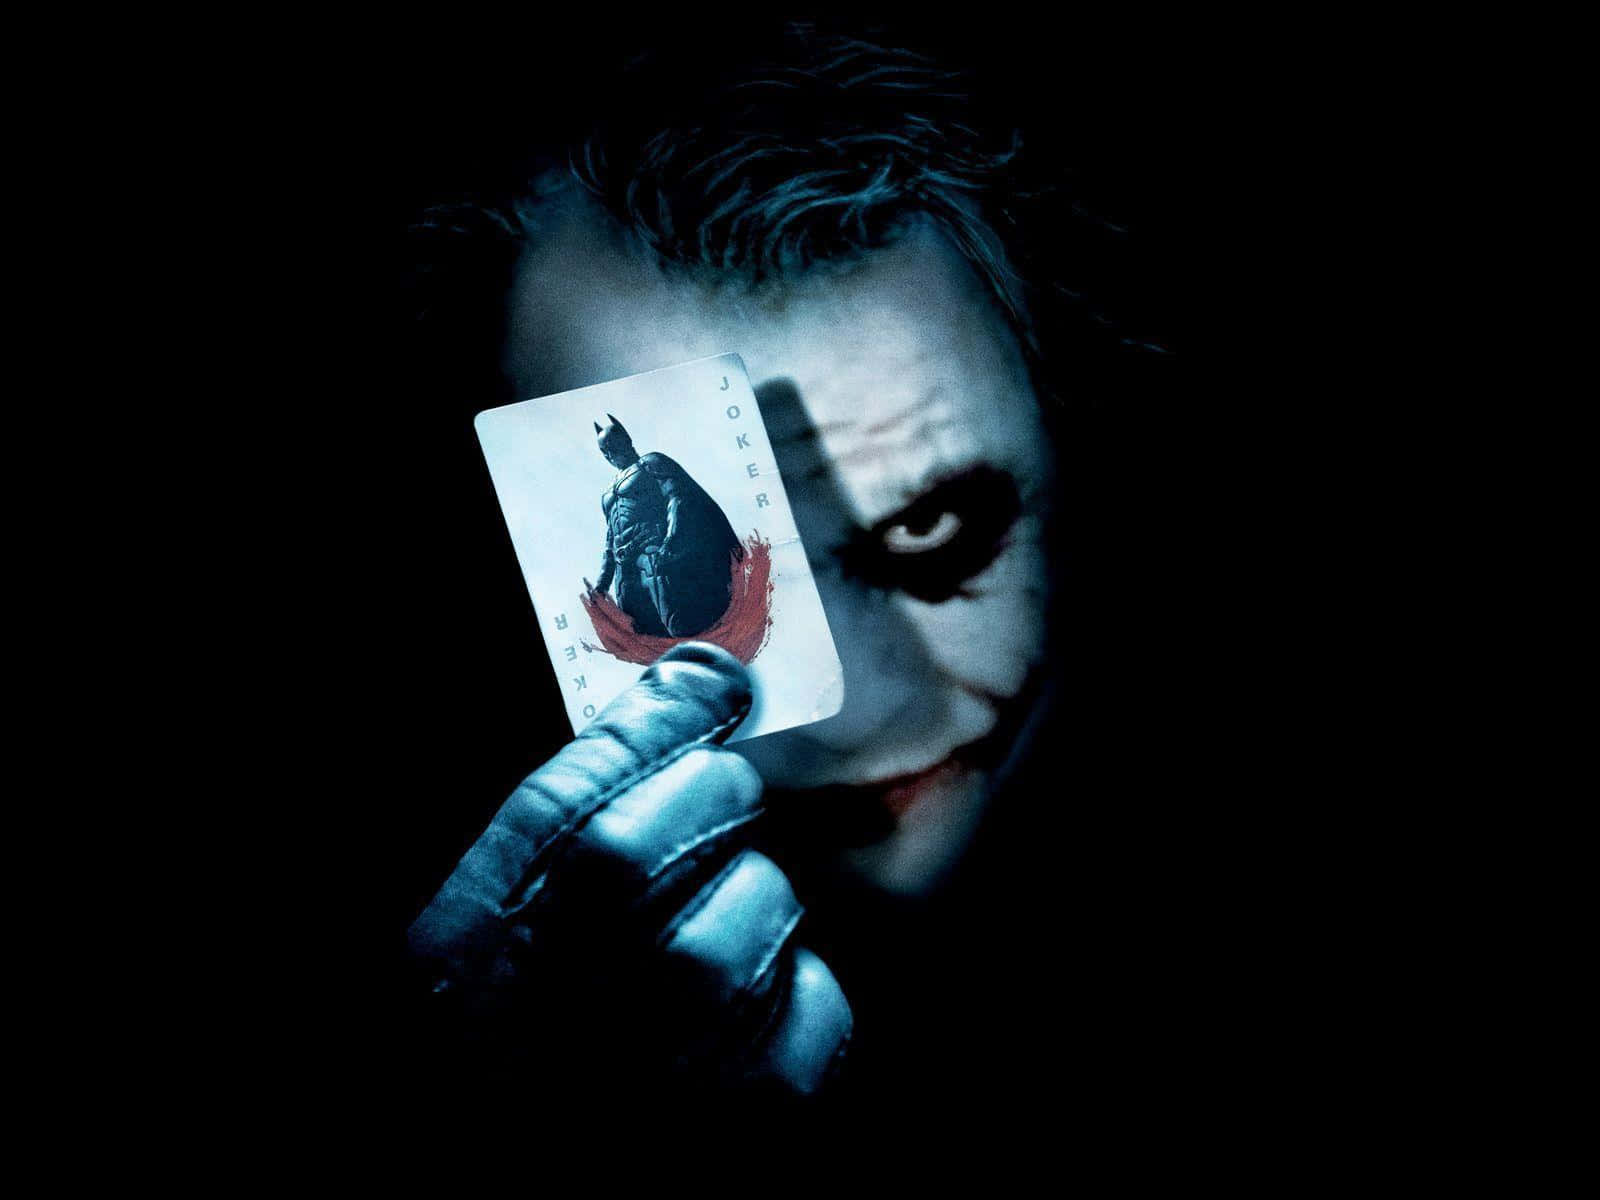 Creepy Dangerous Joker Batman Card